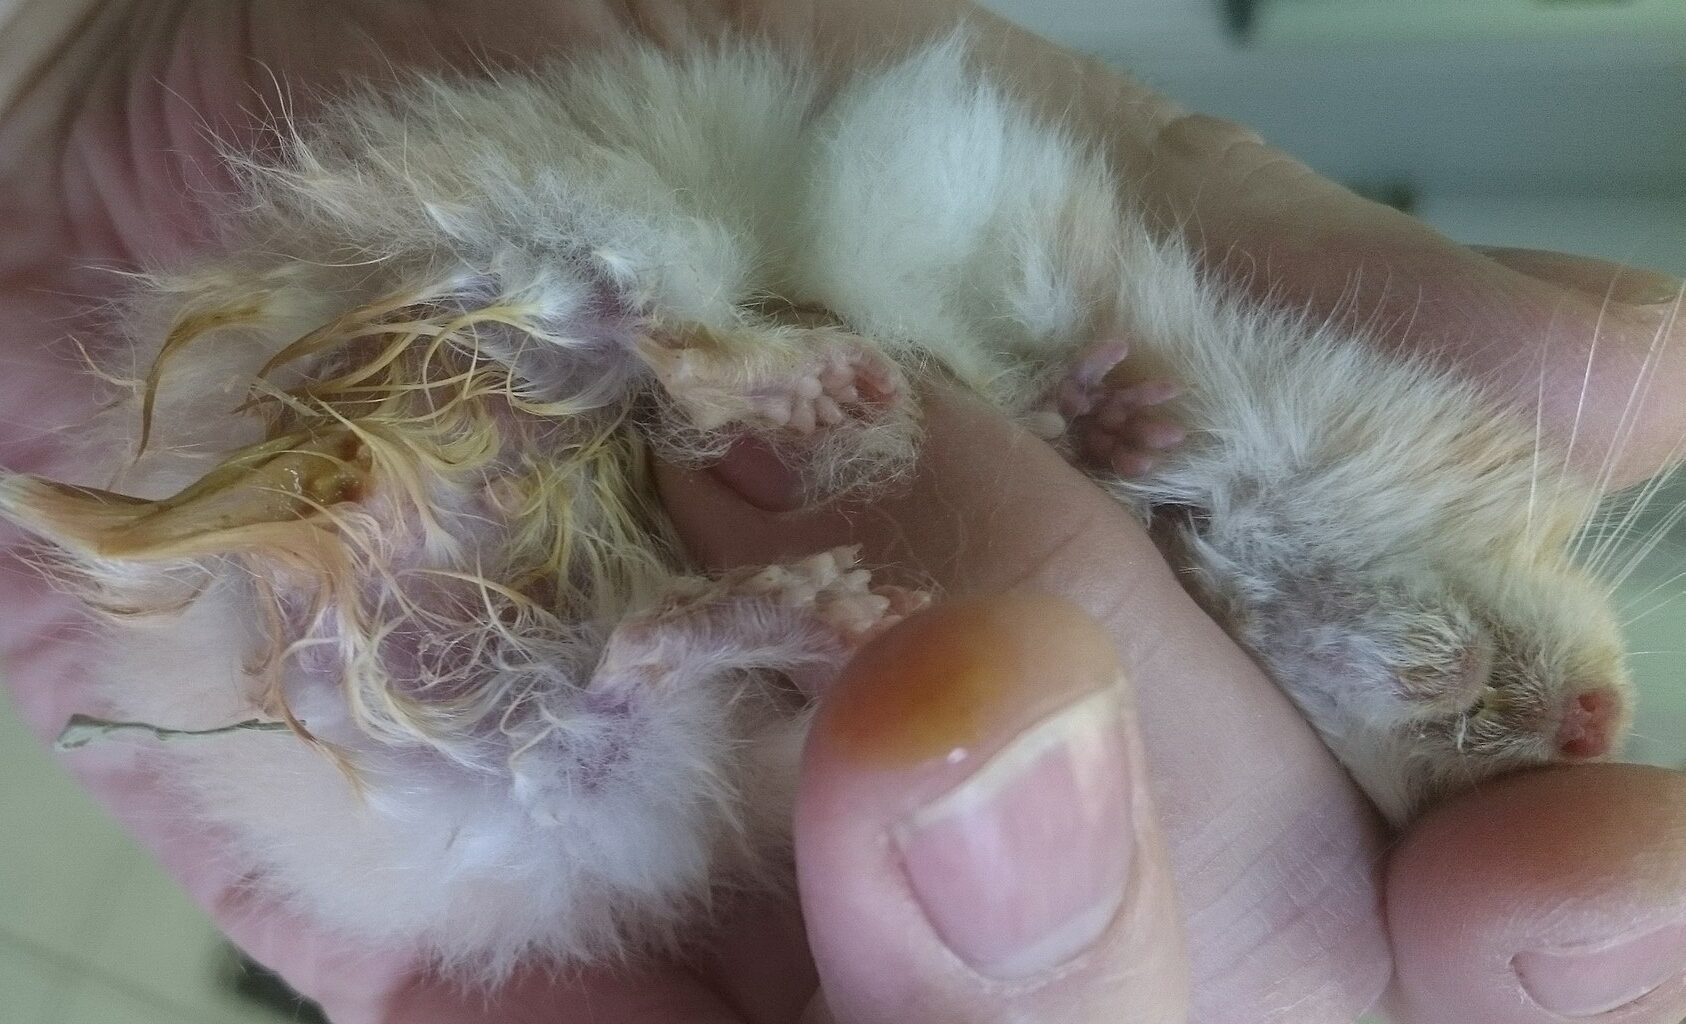 Wet tail disease in hamsters